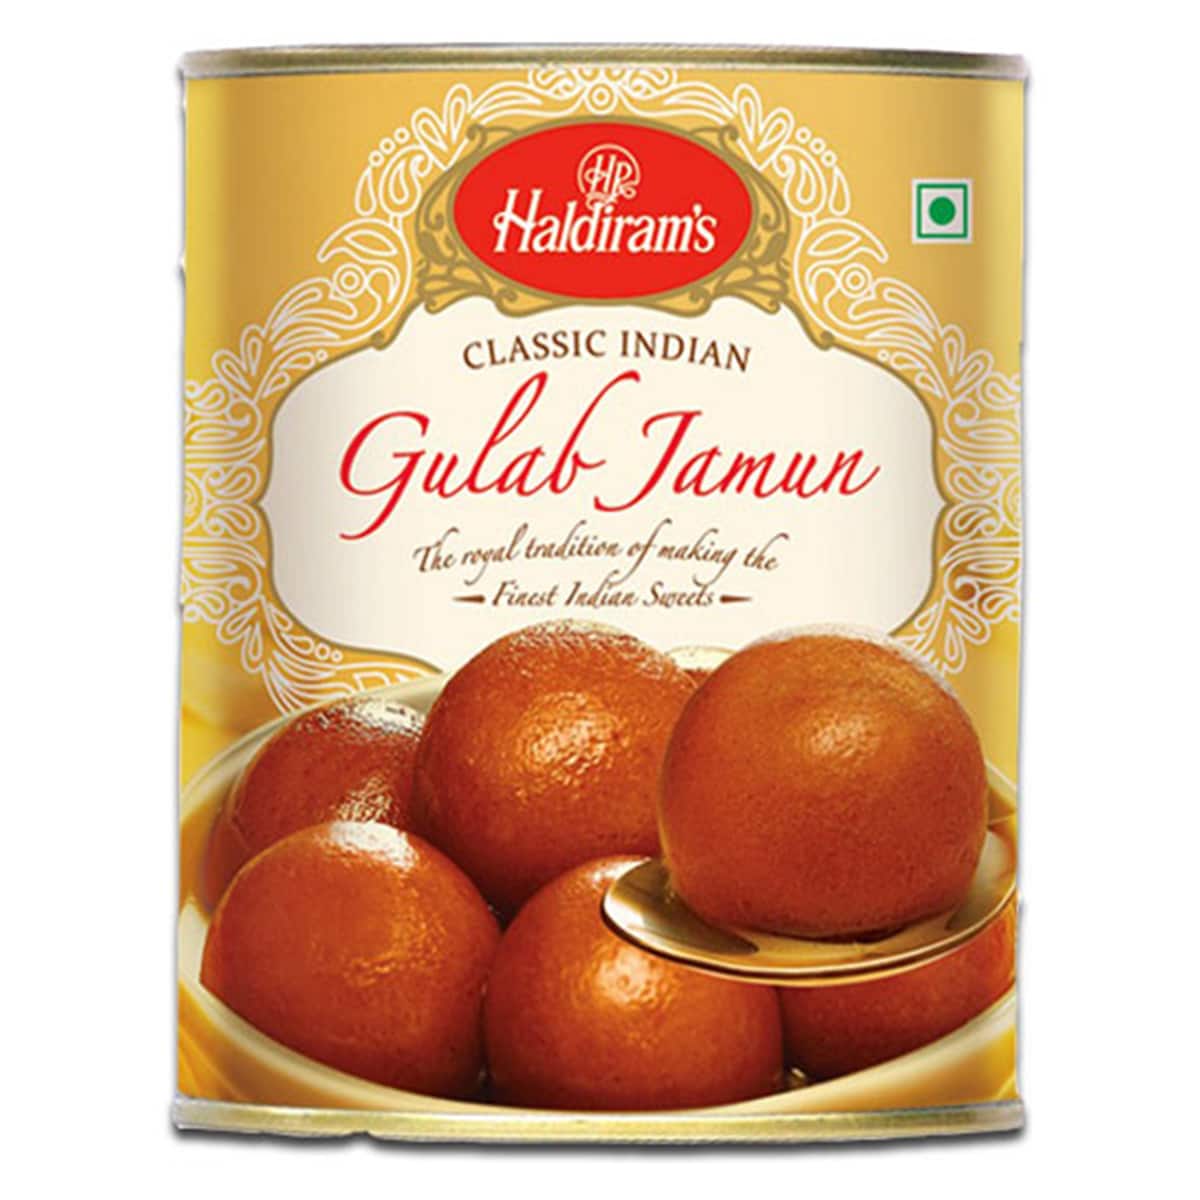 Buy Haldirams Gulab Jamun - 1 kg